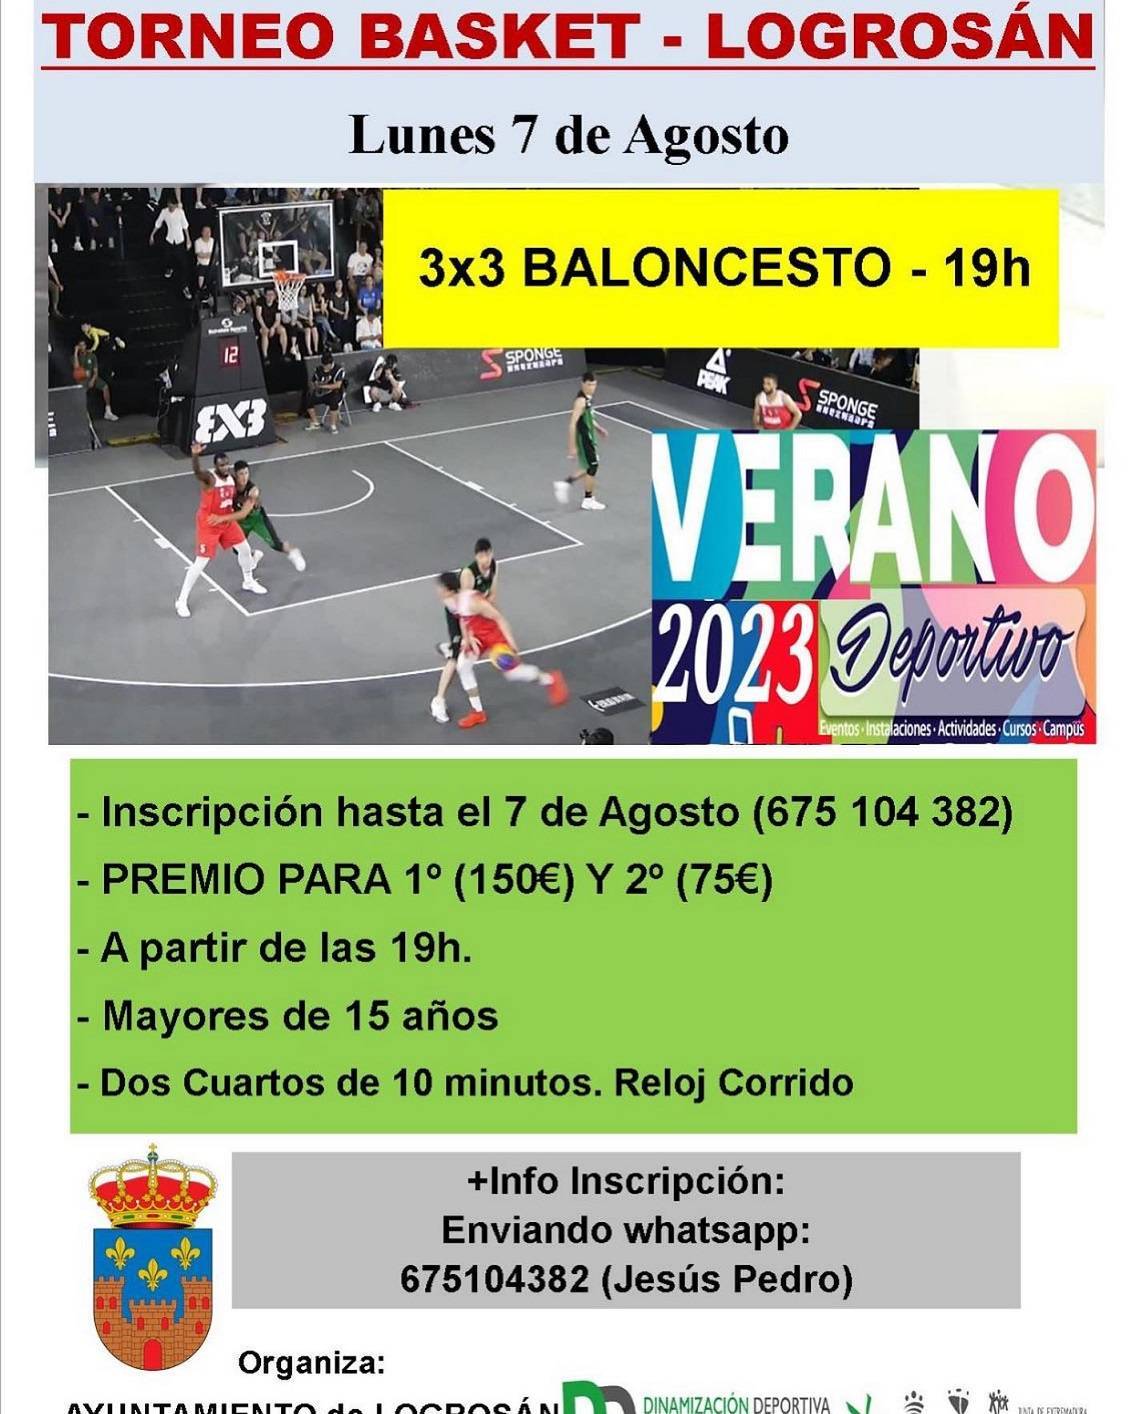 Torneo de basket (2023) - Logrosán (Cáceres)